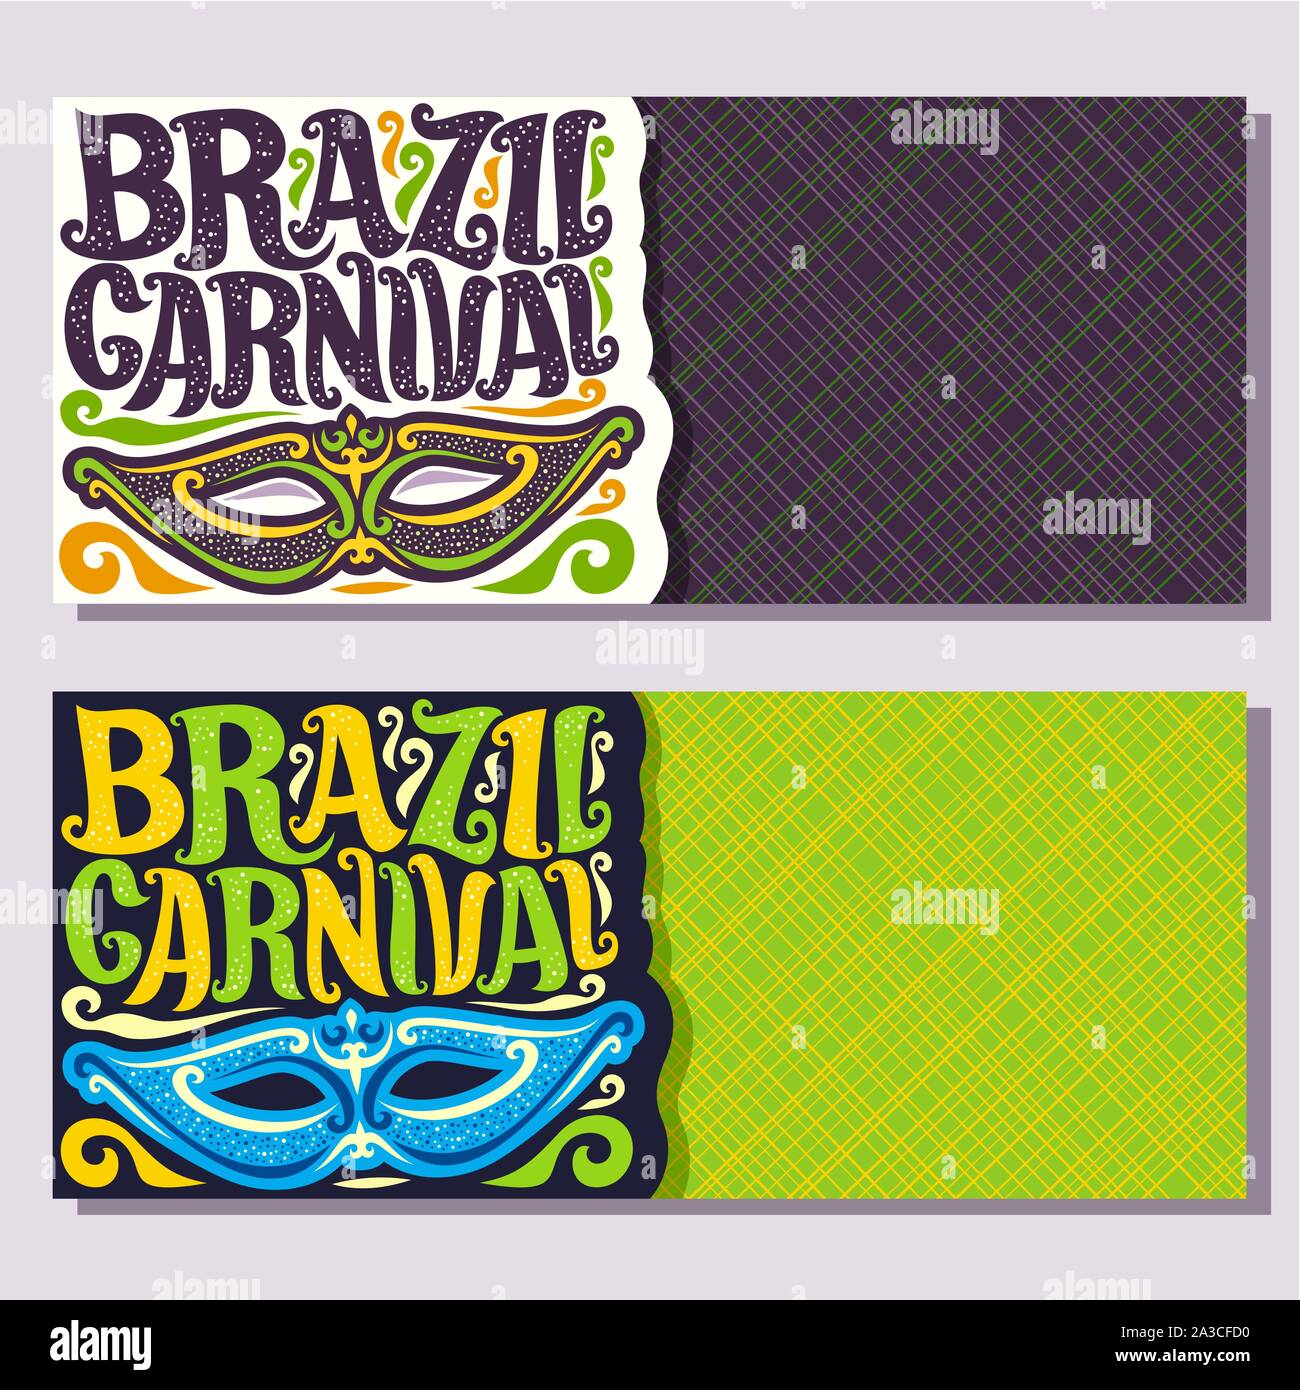 Bannières vecteur pour le Brésil Carnaval, inviter des billets avec masque brésilien violet, police d'origine pour les fêtes de carnaval Brésil texte sur vert, coloré strea Illustration de Vecteur